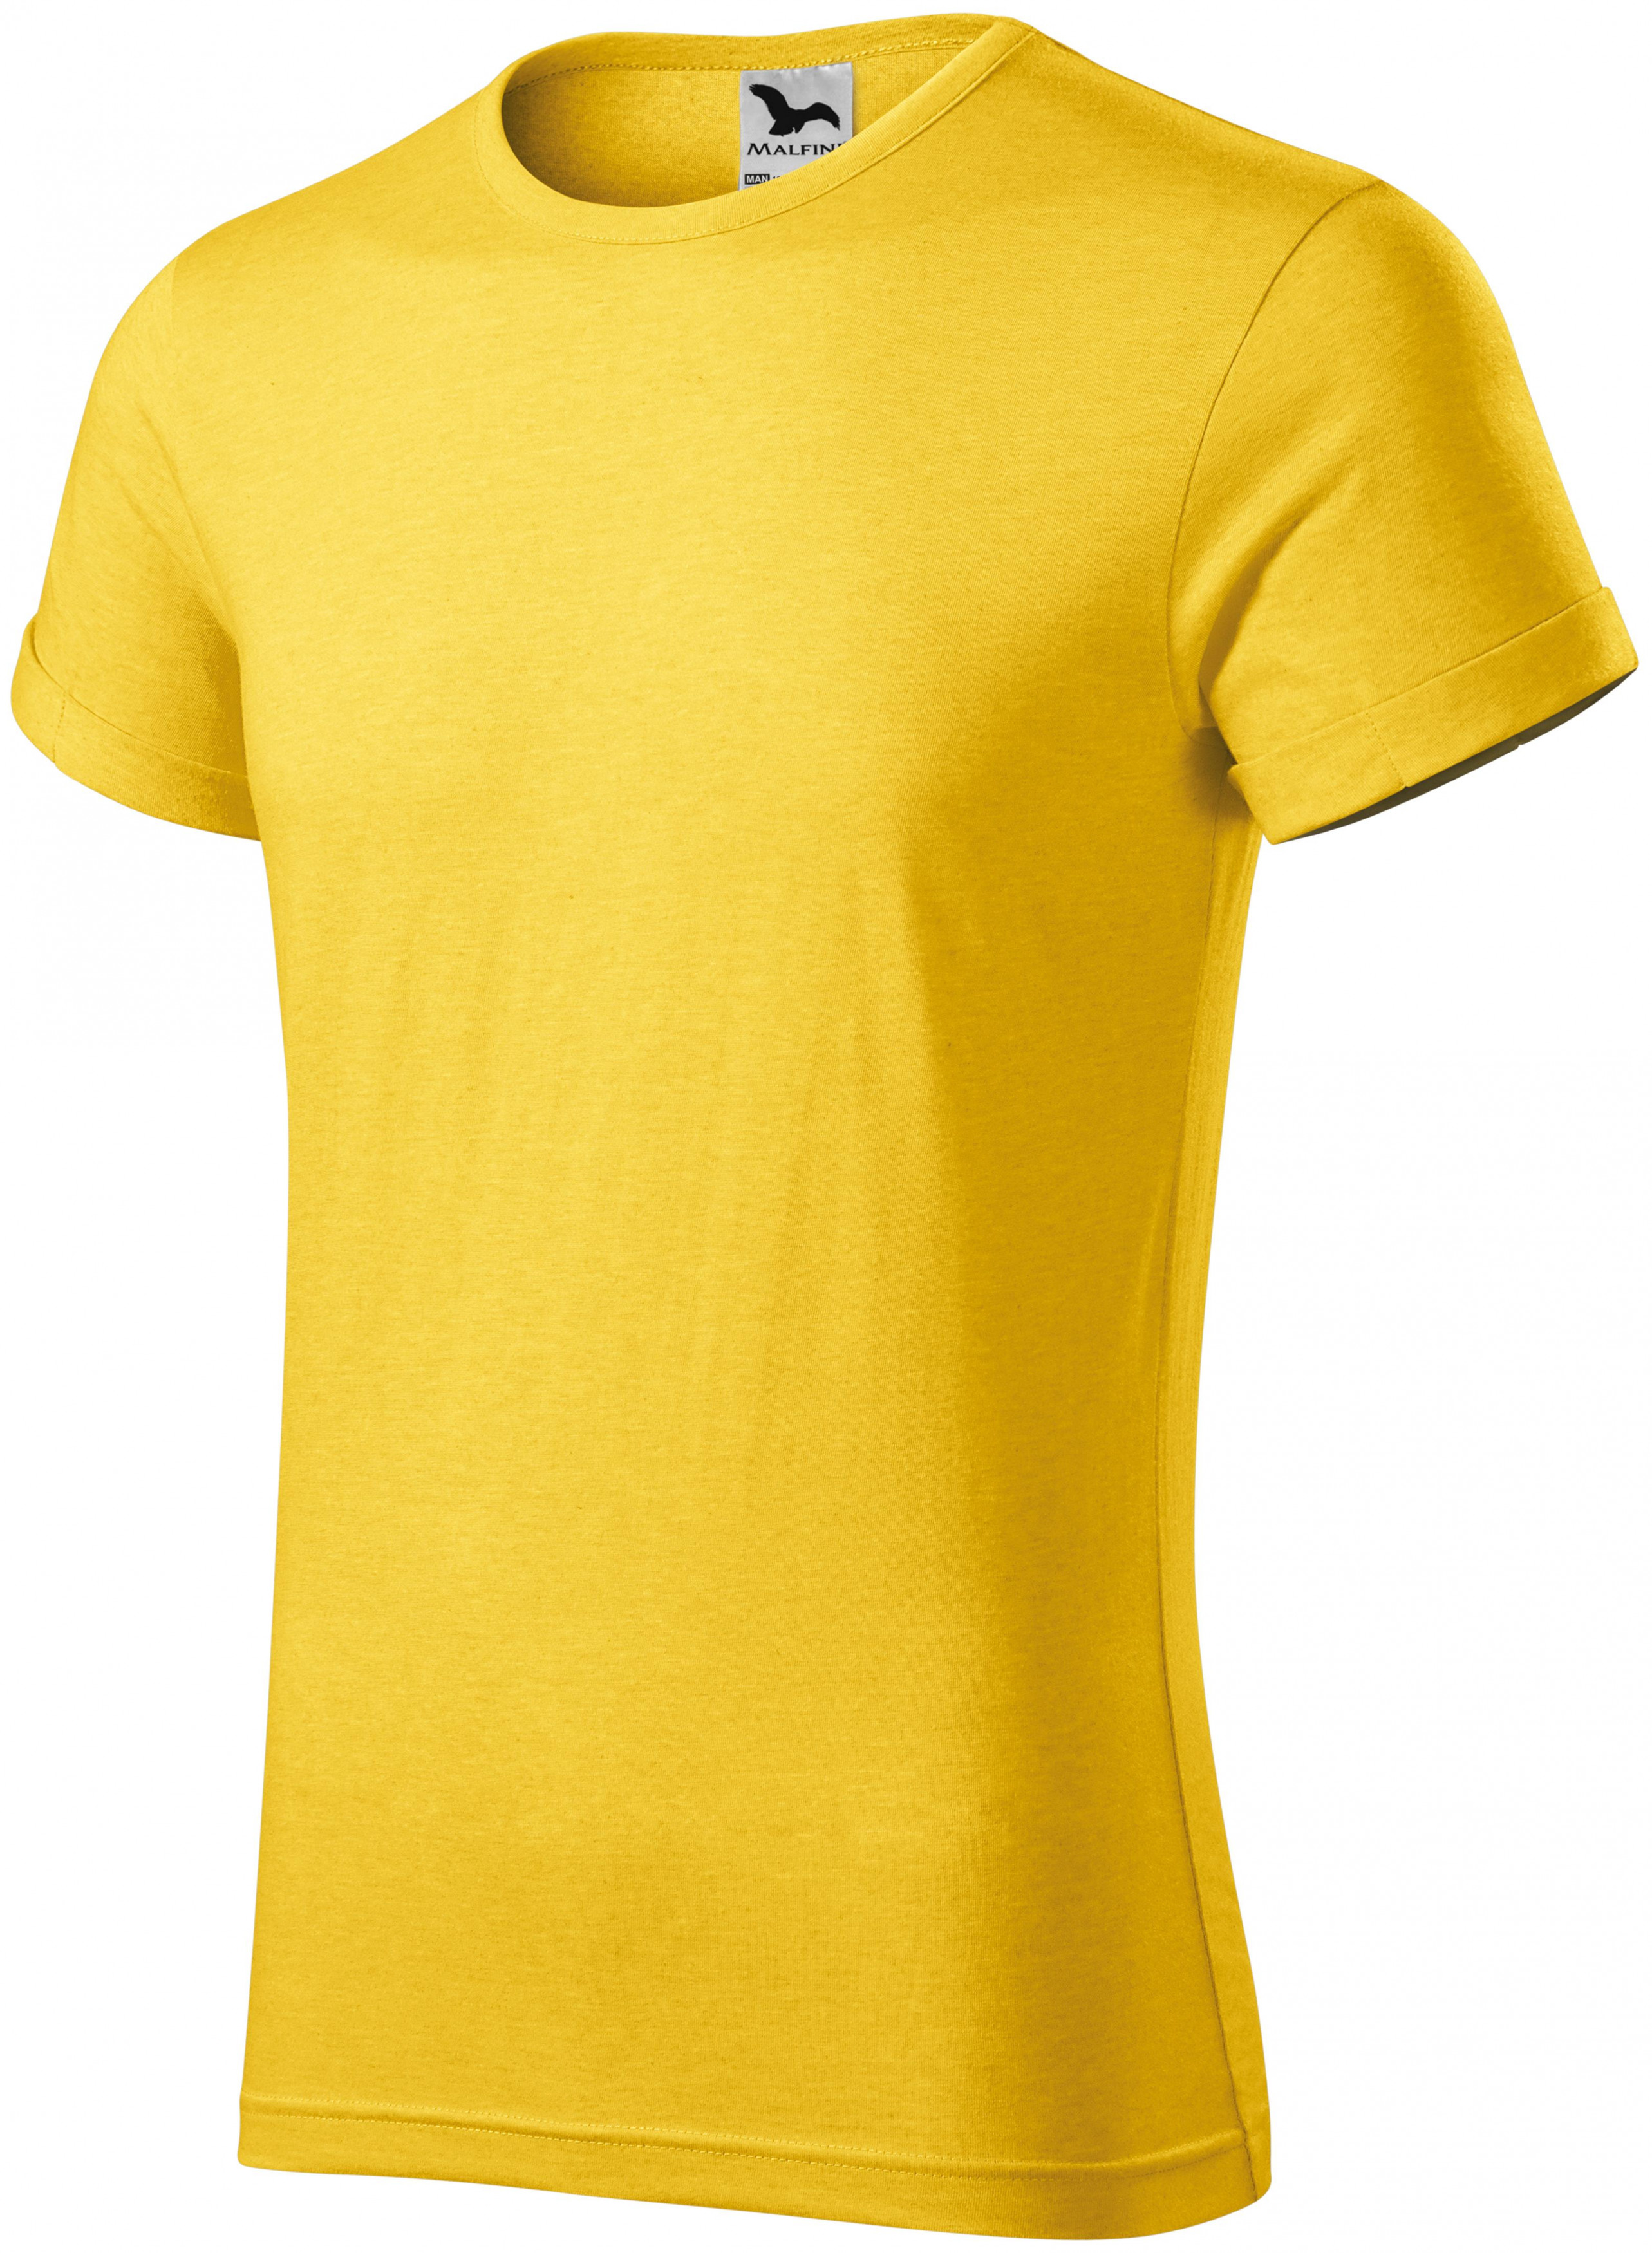 Pánske tričko s vyhrnutými rukávmi, žltý melír, 3XL